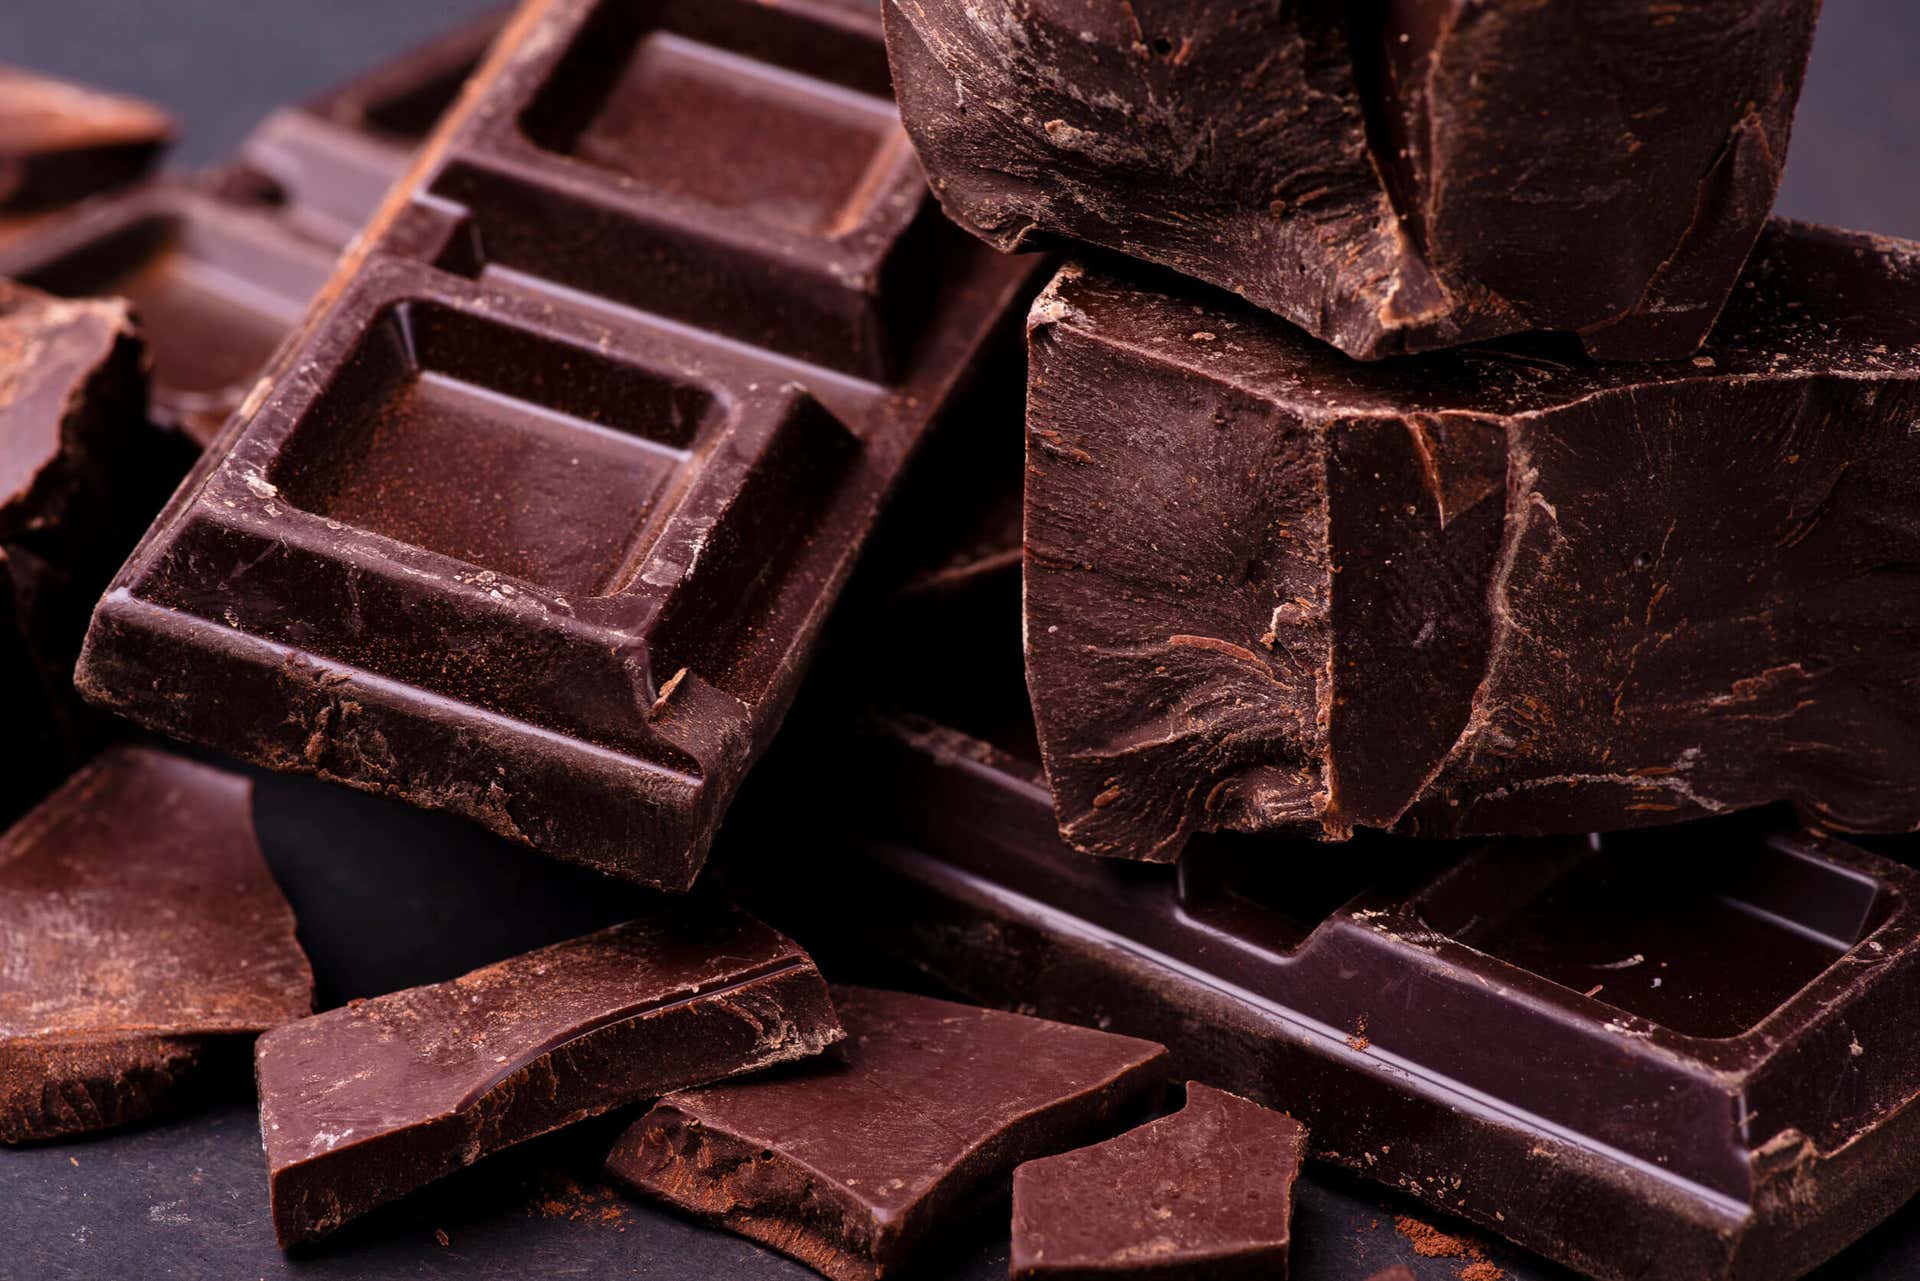 Recomendaciones: ¿Por qué comer chocolate?